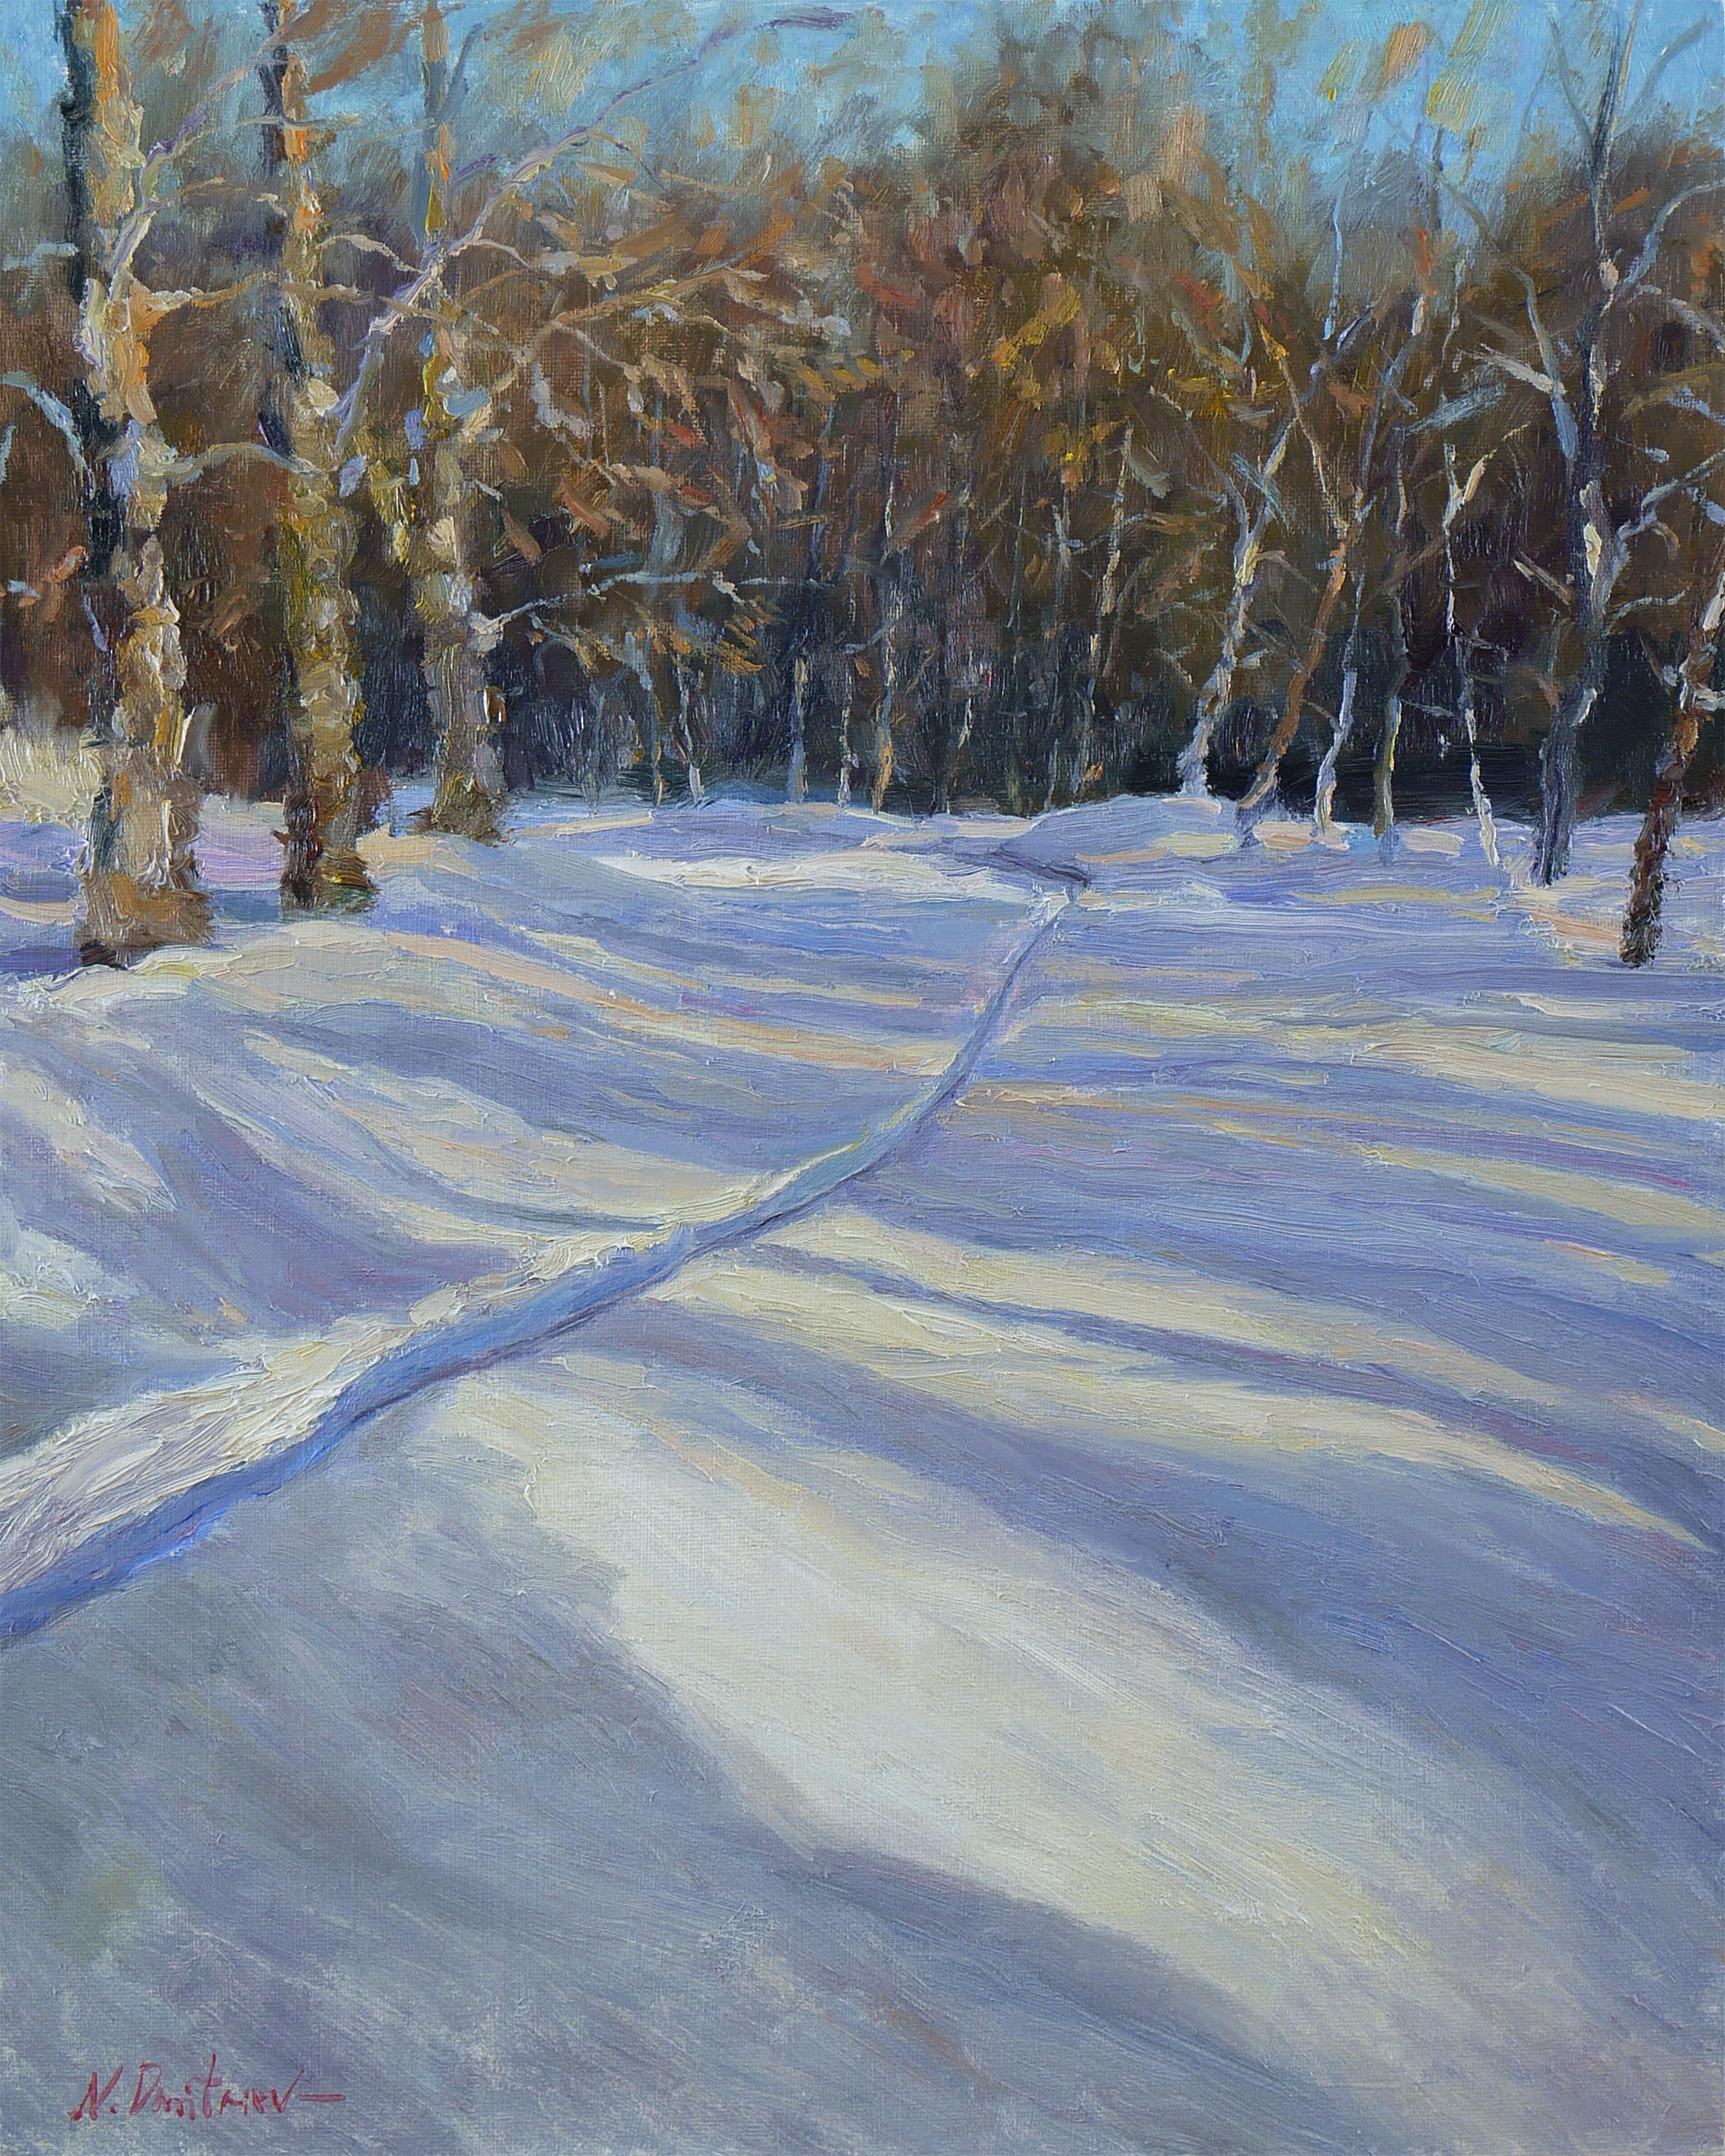 The Snowy Sunny Path - peinture de paysage d'hiver